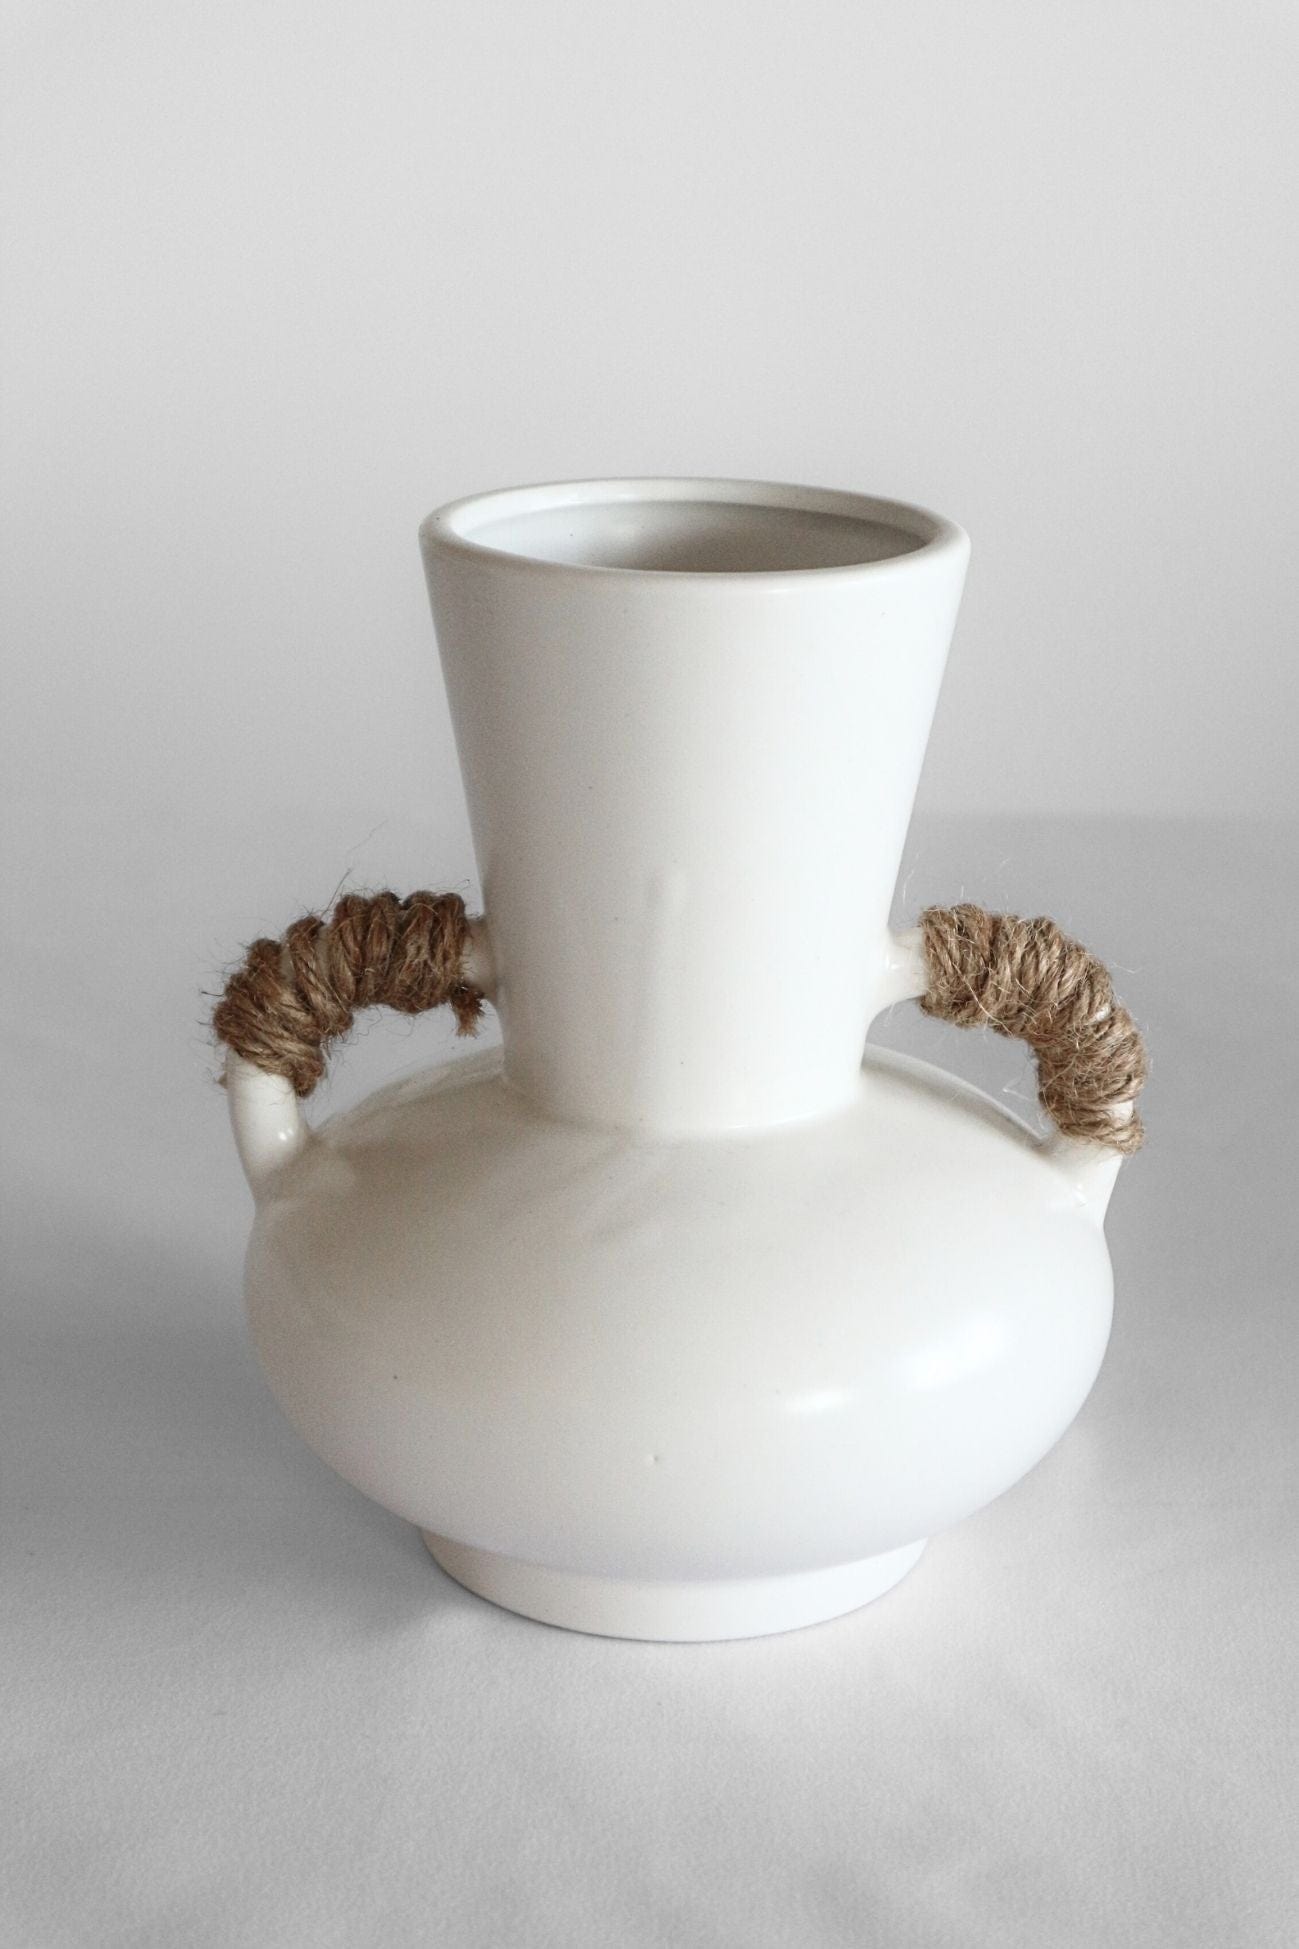 Item International Prover Prover - Vaso in ceramica bianca con manici intrecciati | Item International